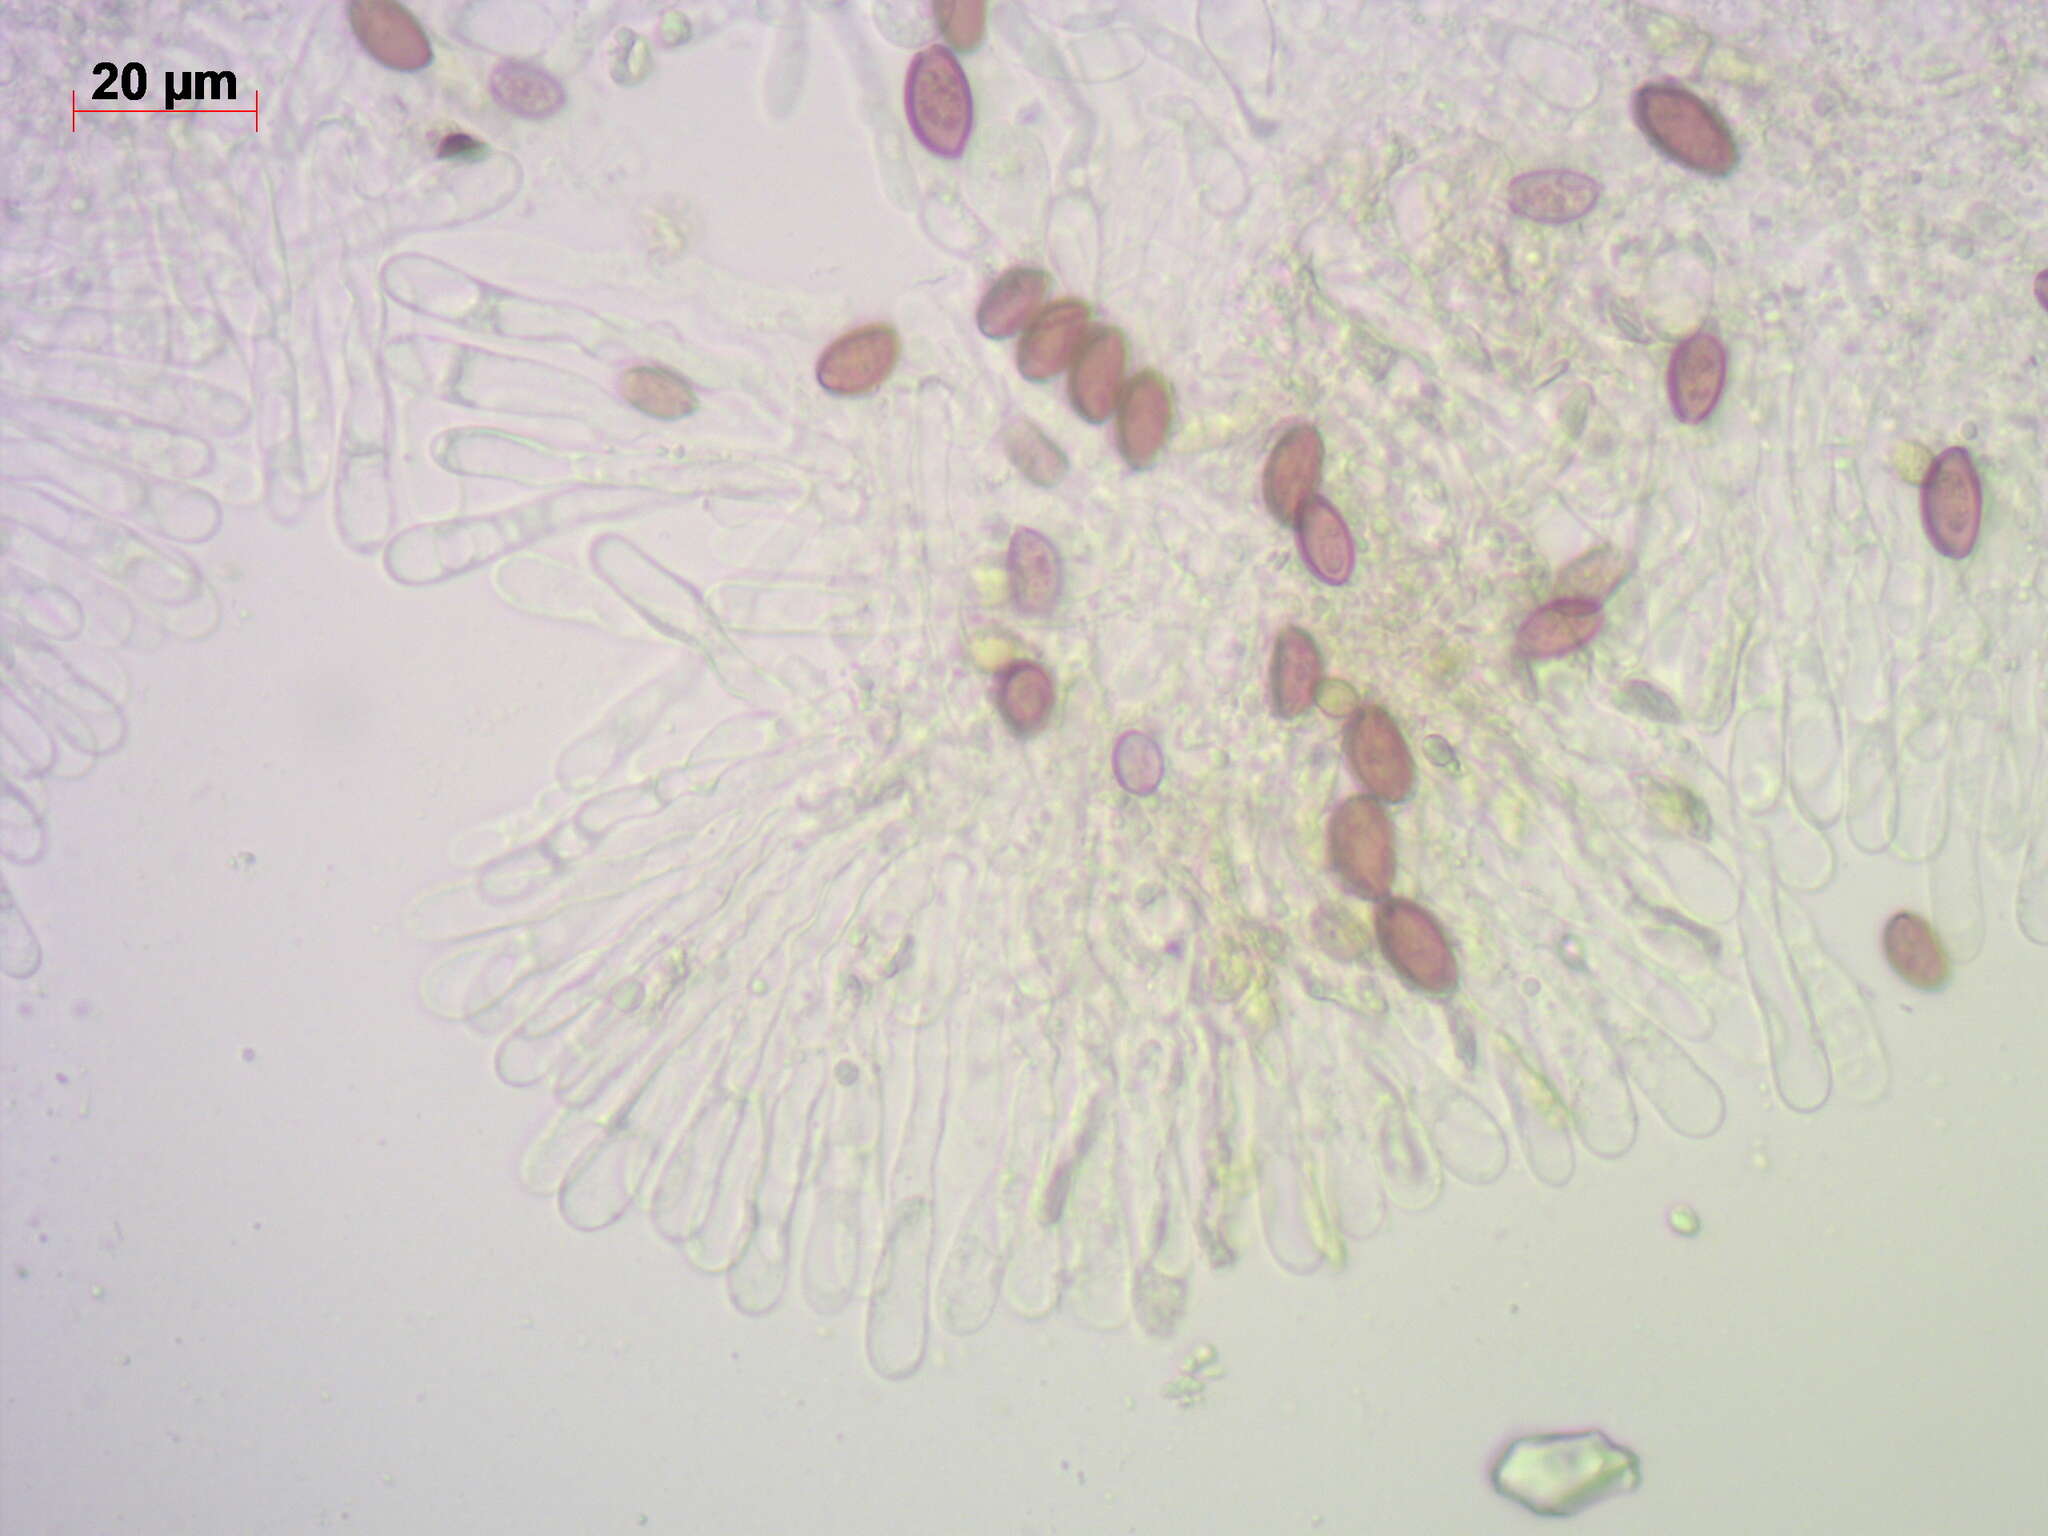 Image of Leratiomyces magnivelaris (Peck) Bridge & Spooner 2008